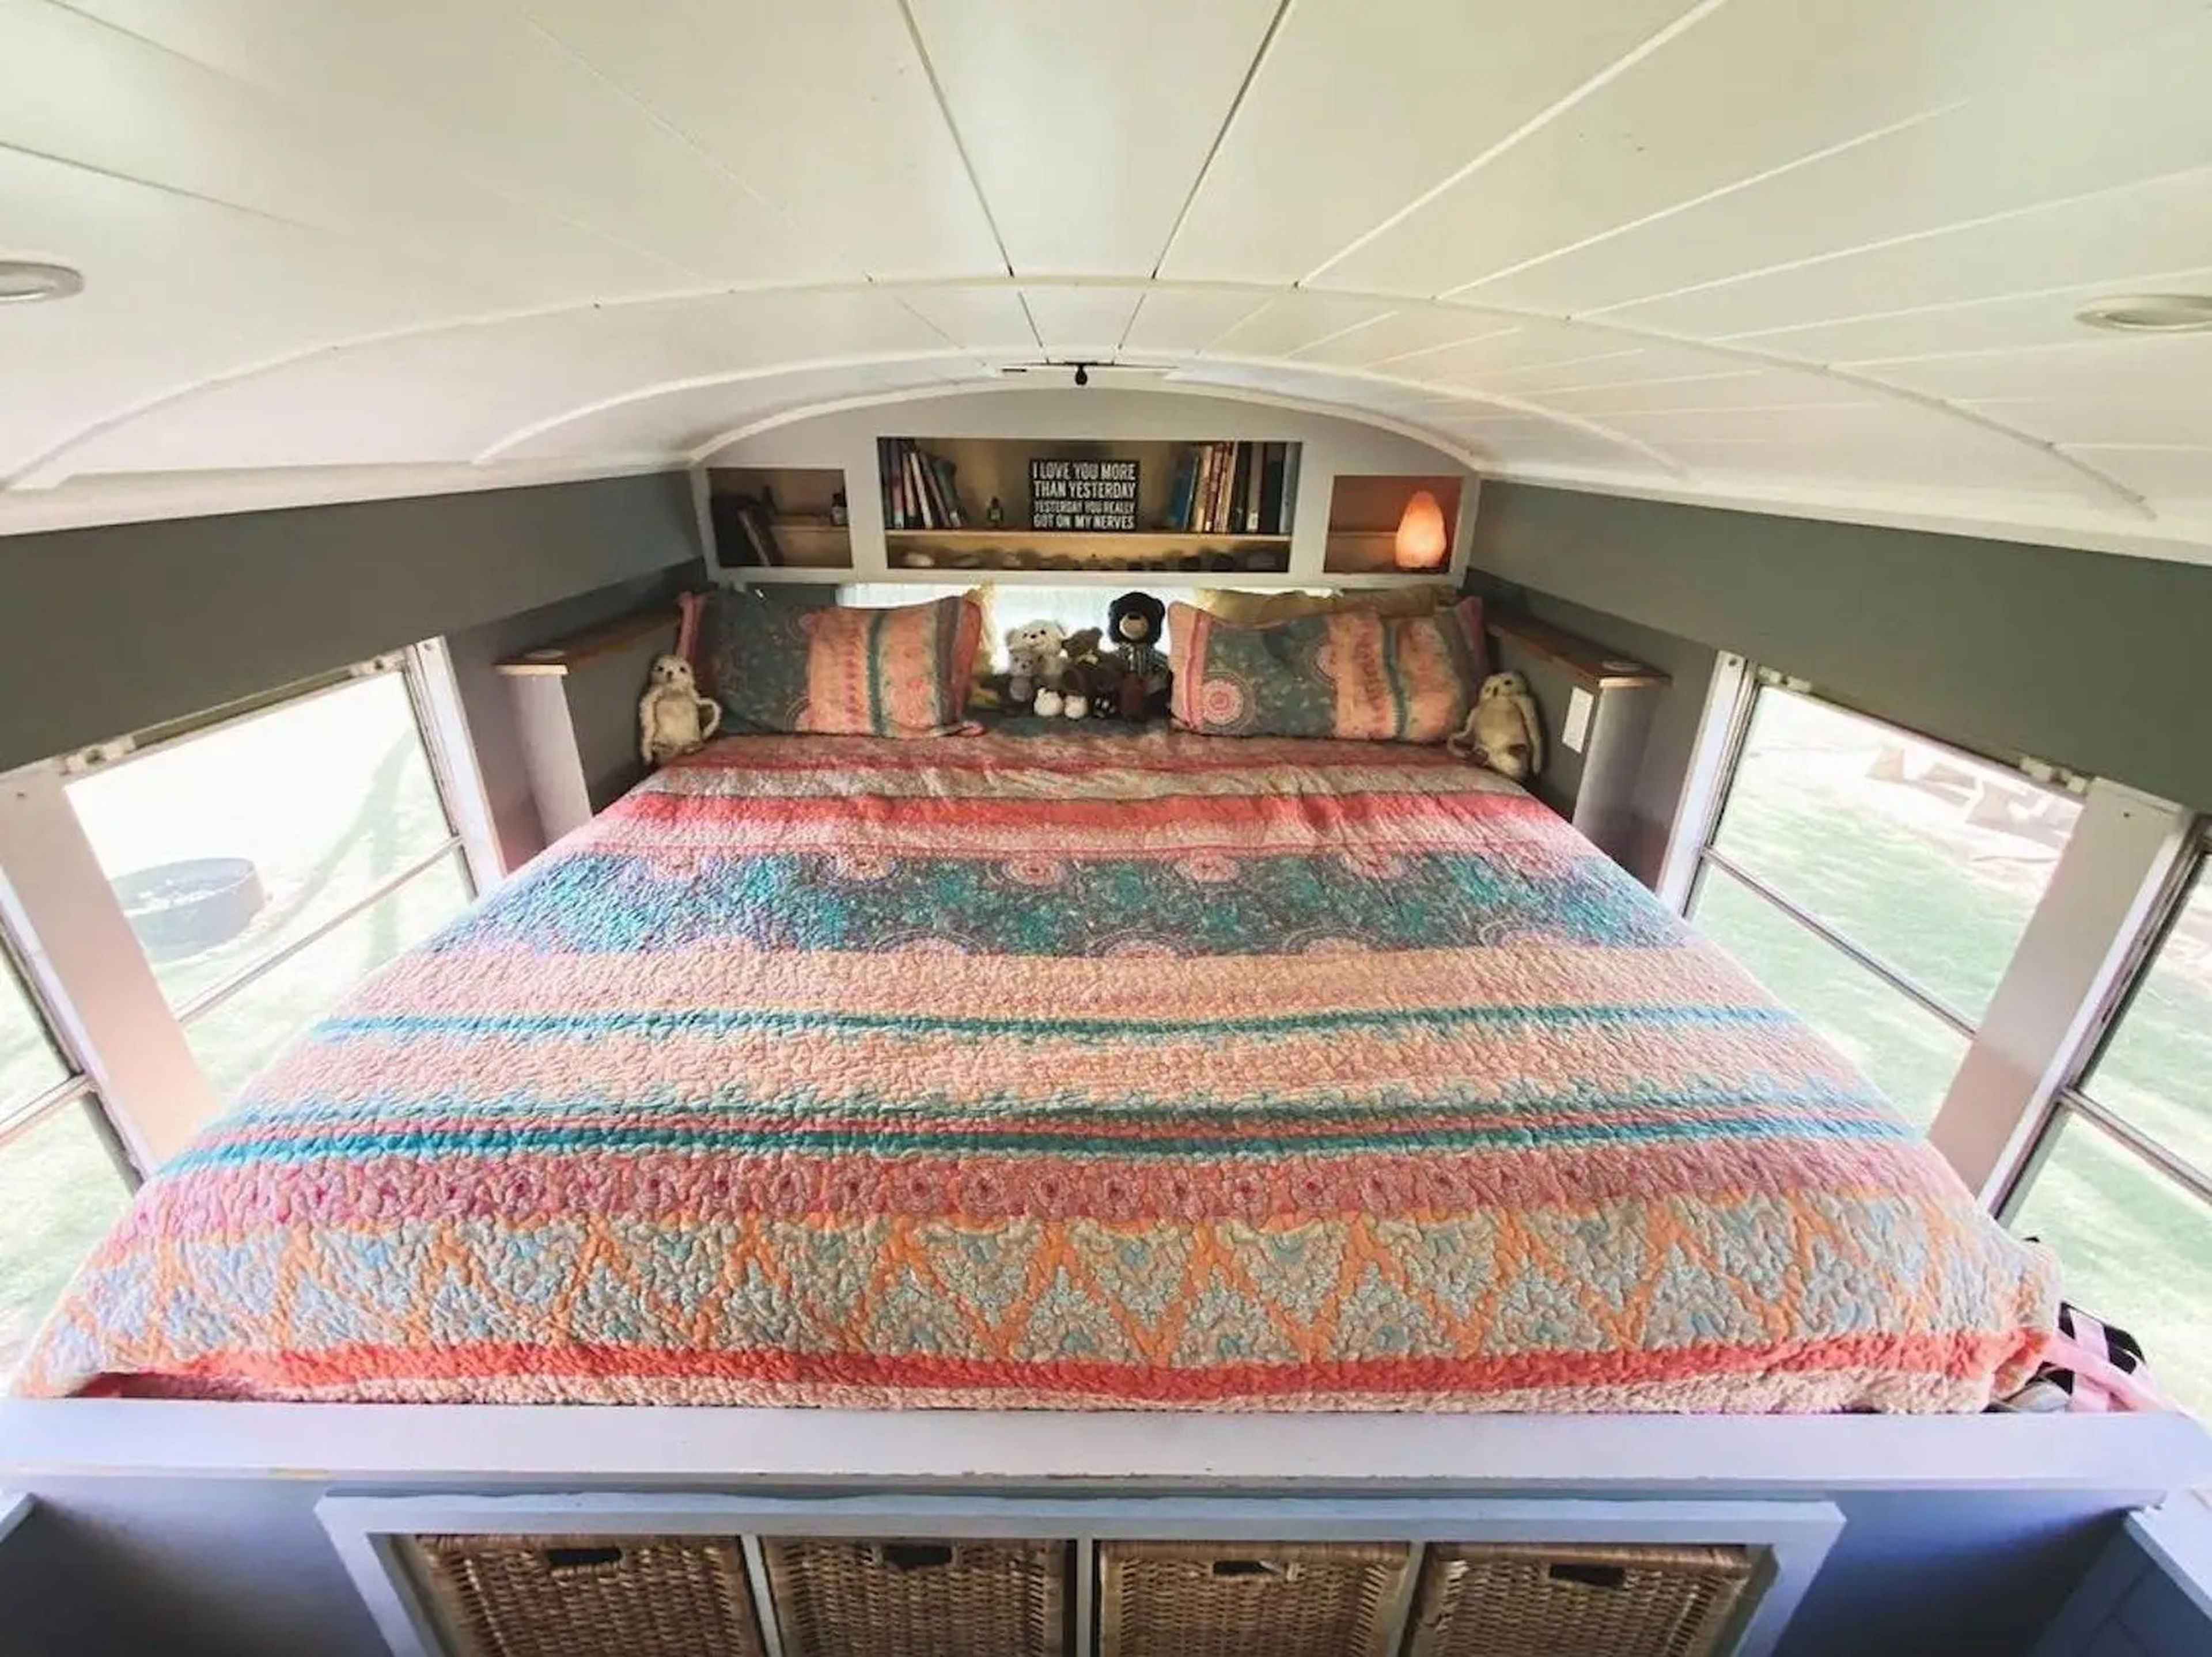 La familia tiene un colchón tamaño king en la parte trasera de su autobús.